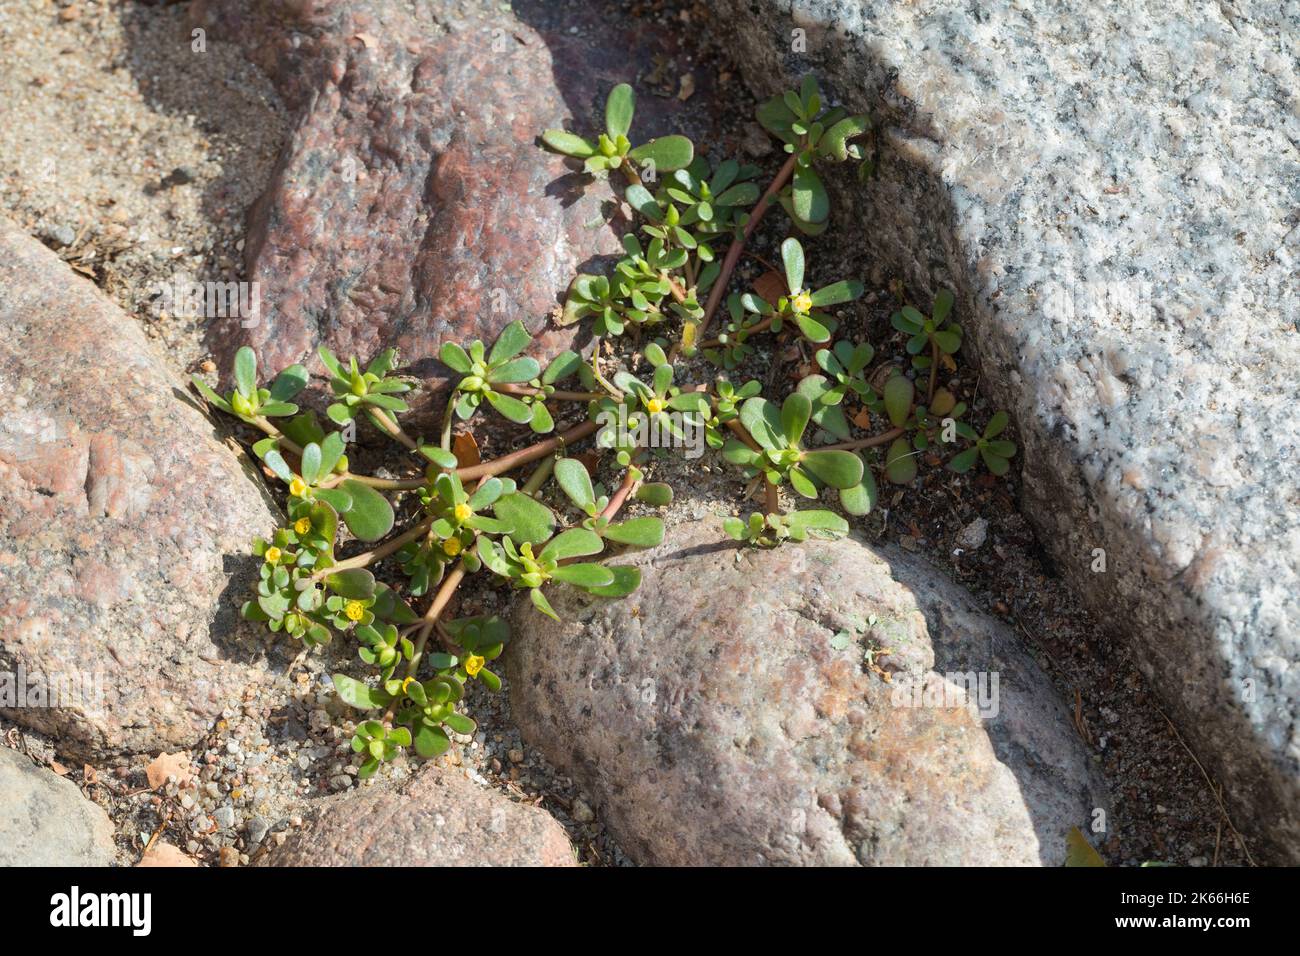 Voie commune, voie verte (Portulaca oleracea), en croissance dans les espaces de pavage, Allemagne Banque D'Images